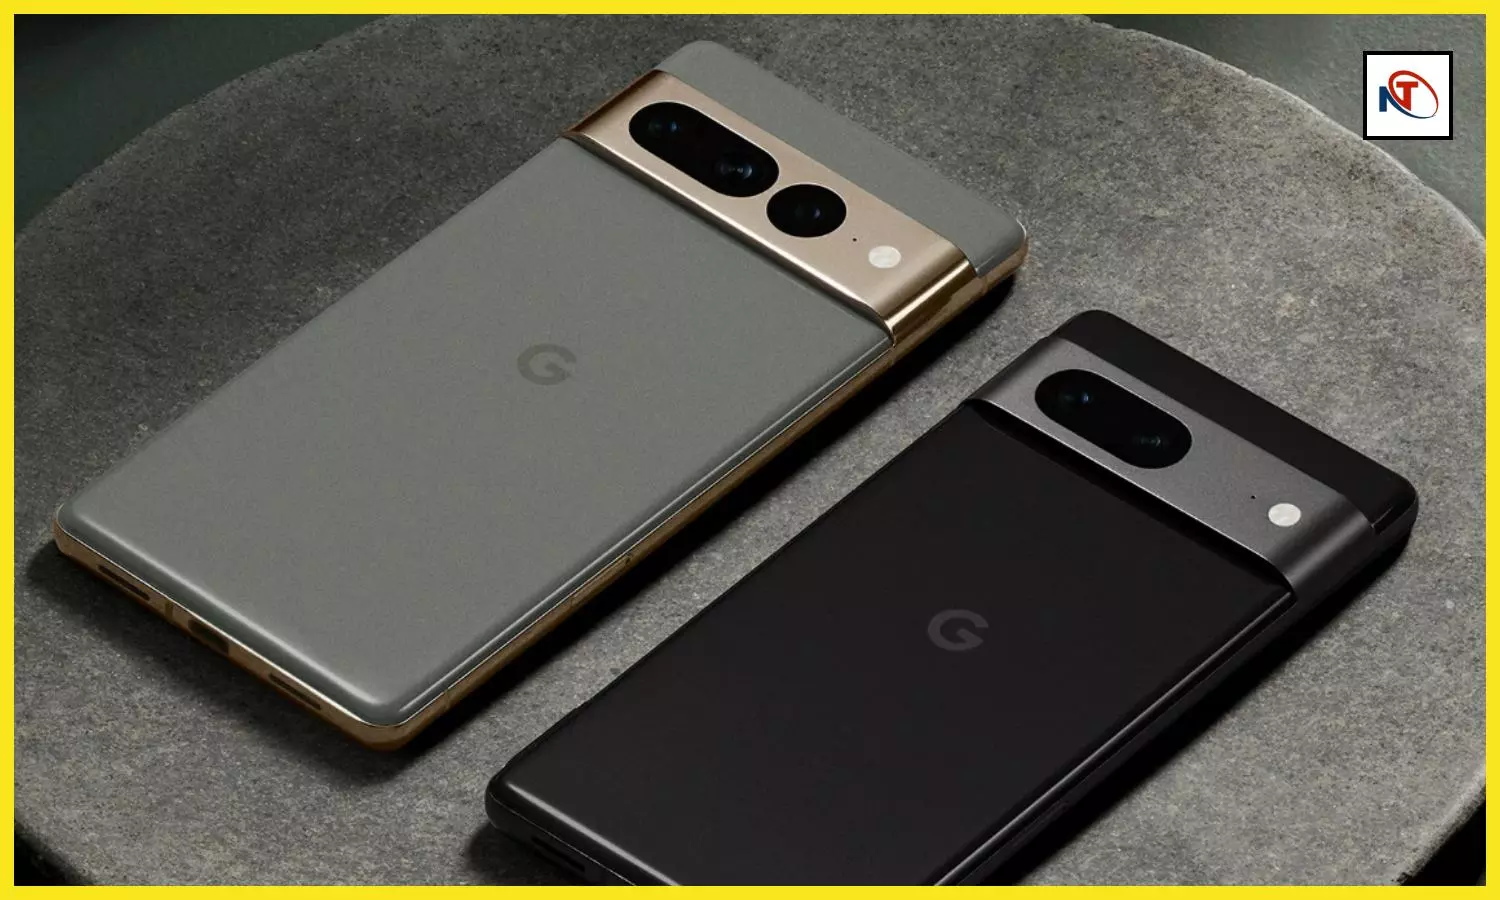 Google Pixel 8 Pro Series: गूगल पिक्सल 8 प्रो सीरीज के ये स्मार्ट फोन सर्किल टू सर्च के साथ फोटोमोजी जैसी कई नई खूबियों से होंगें लैस